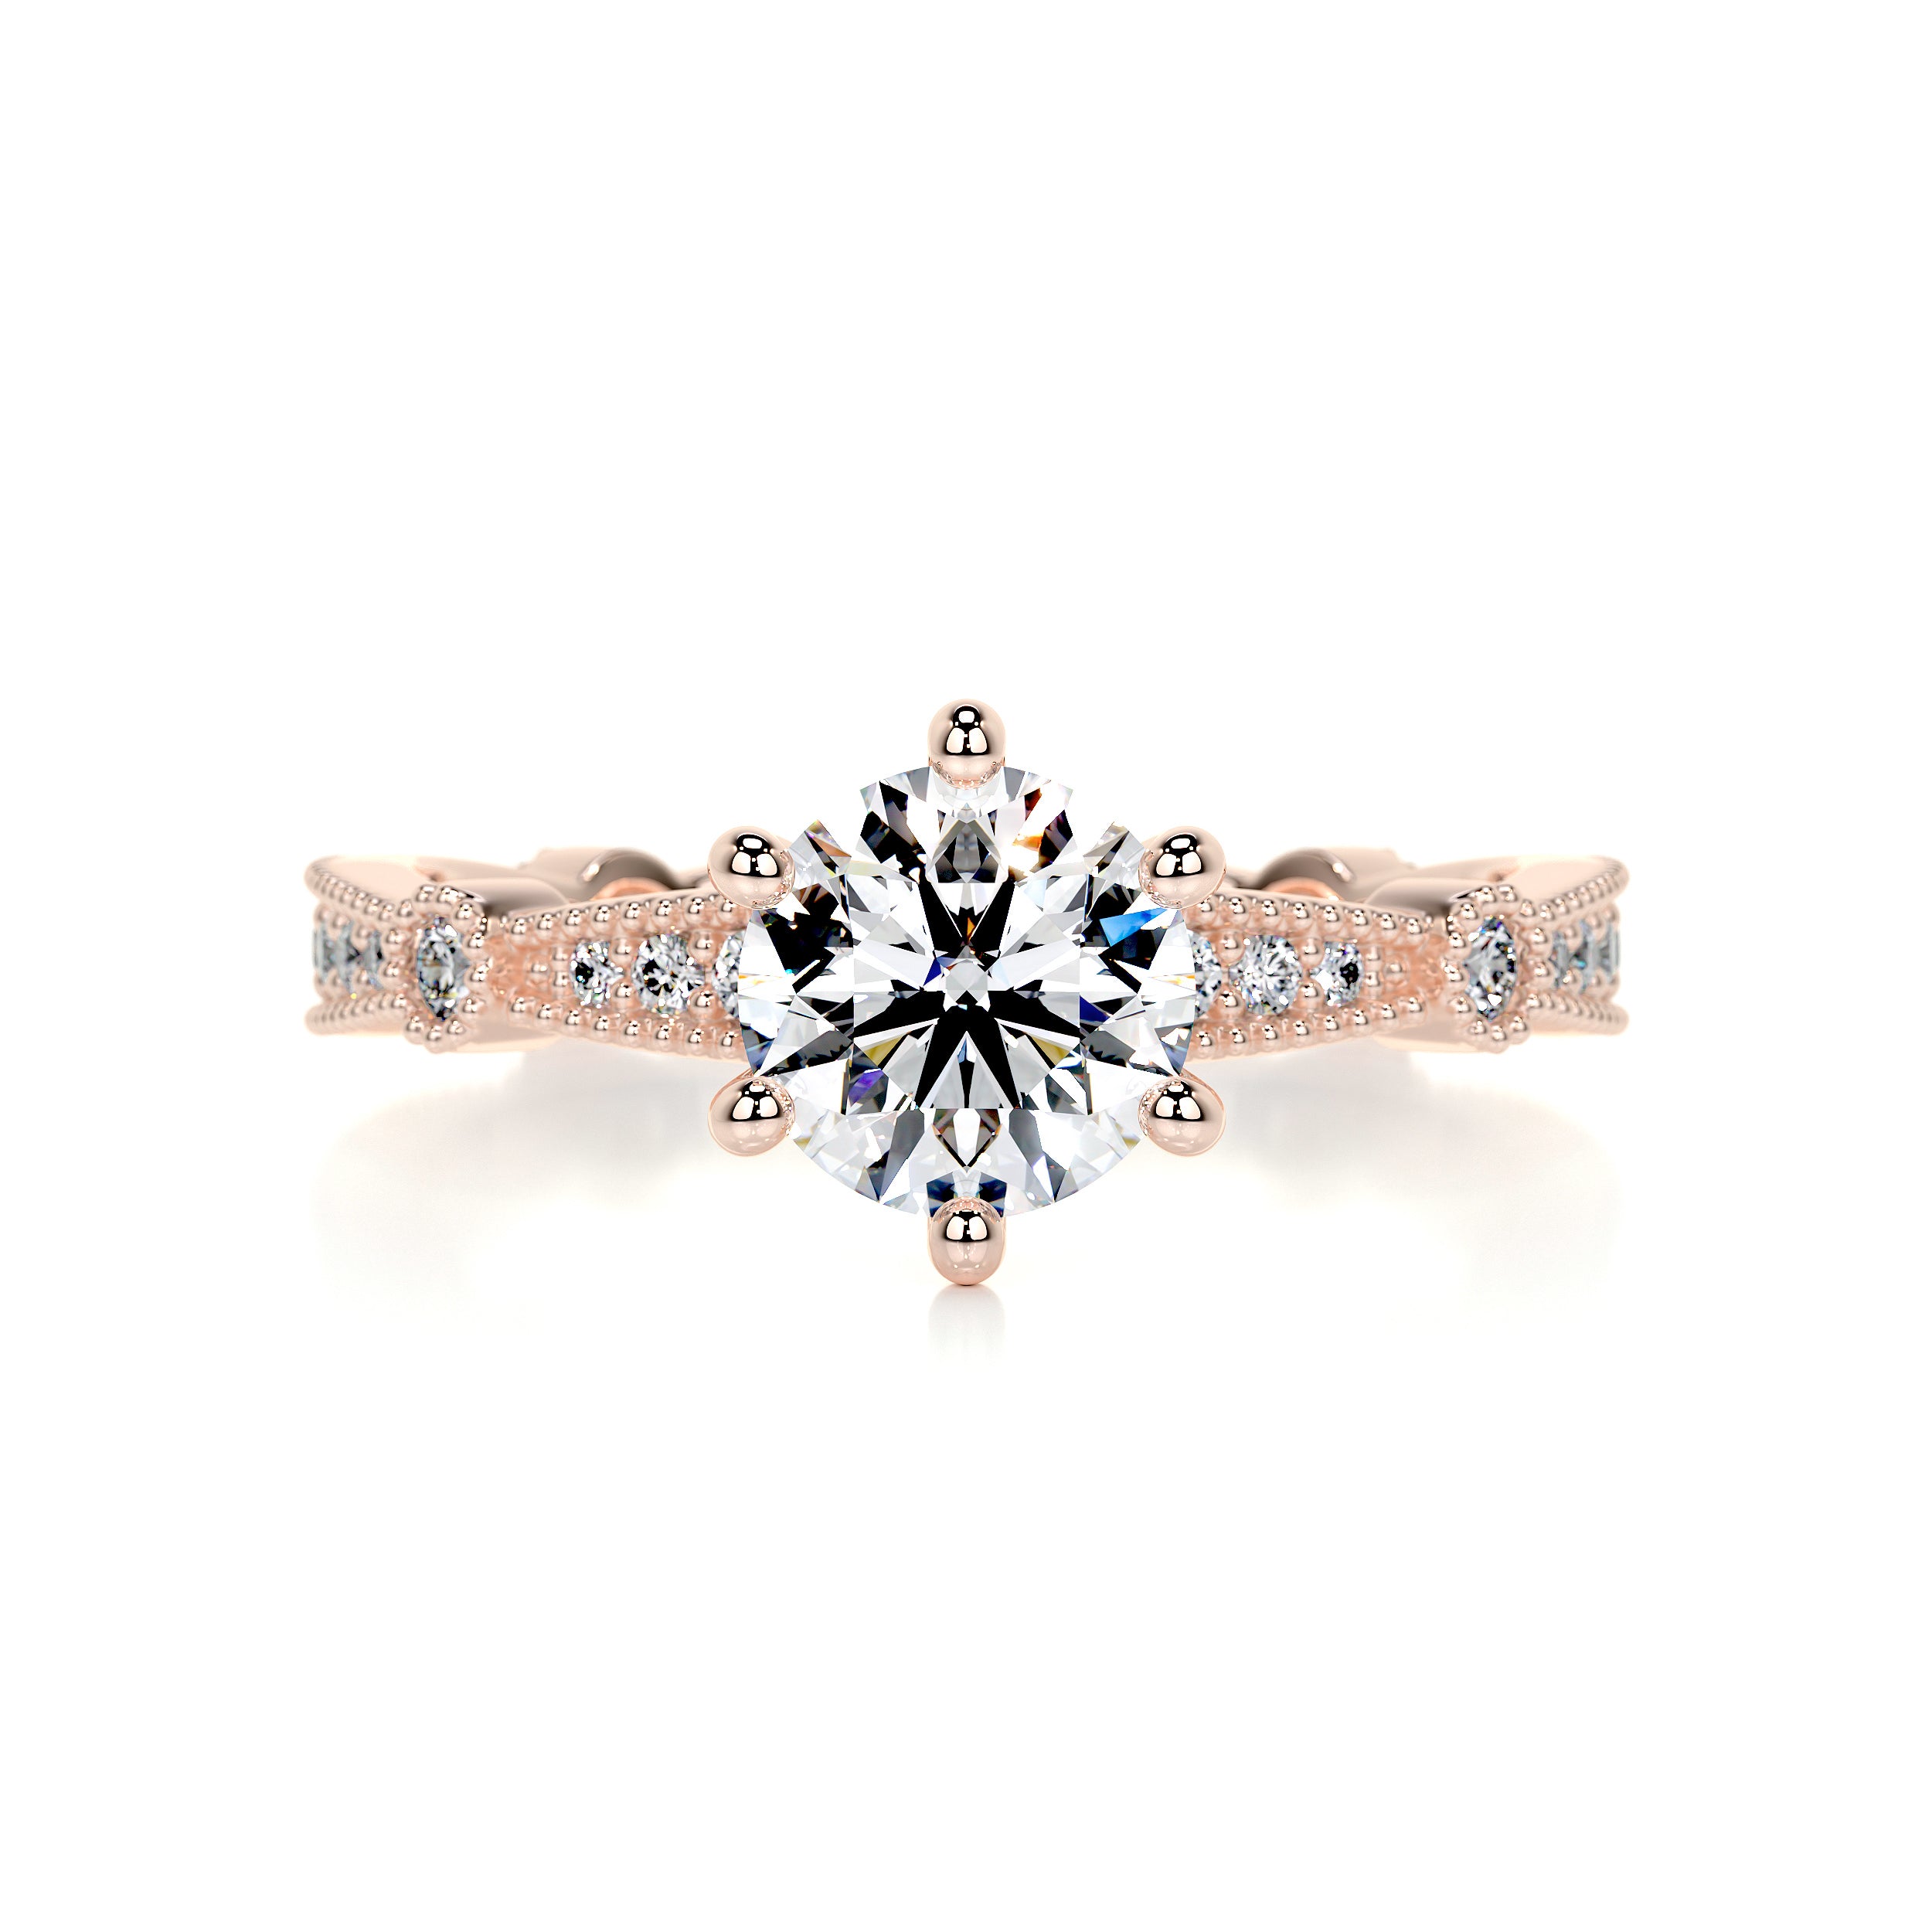 Stacy Moissanite & Diamonds Ring   (1.30 Carat) -14K Rose Gold